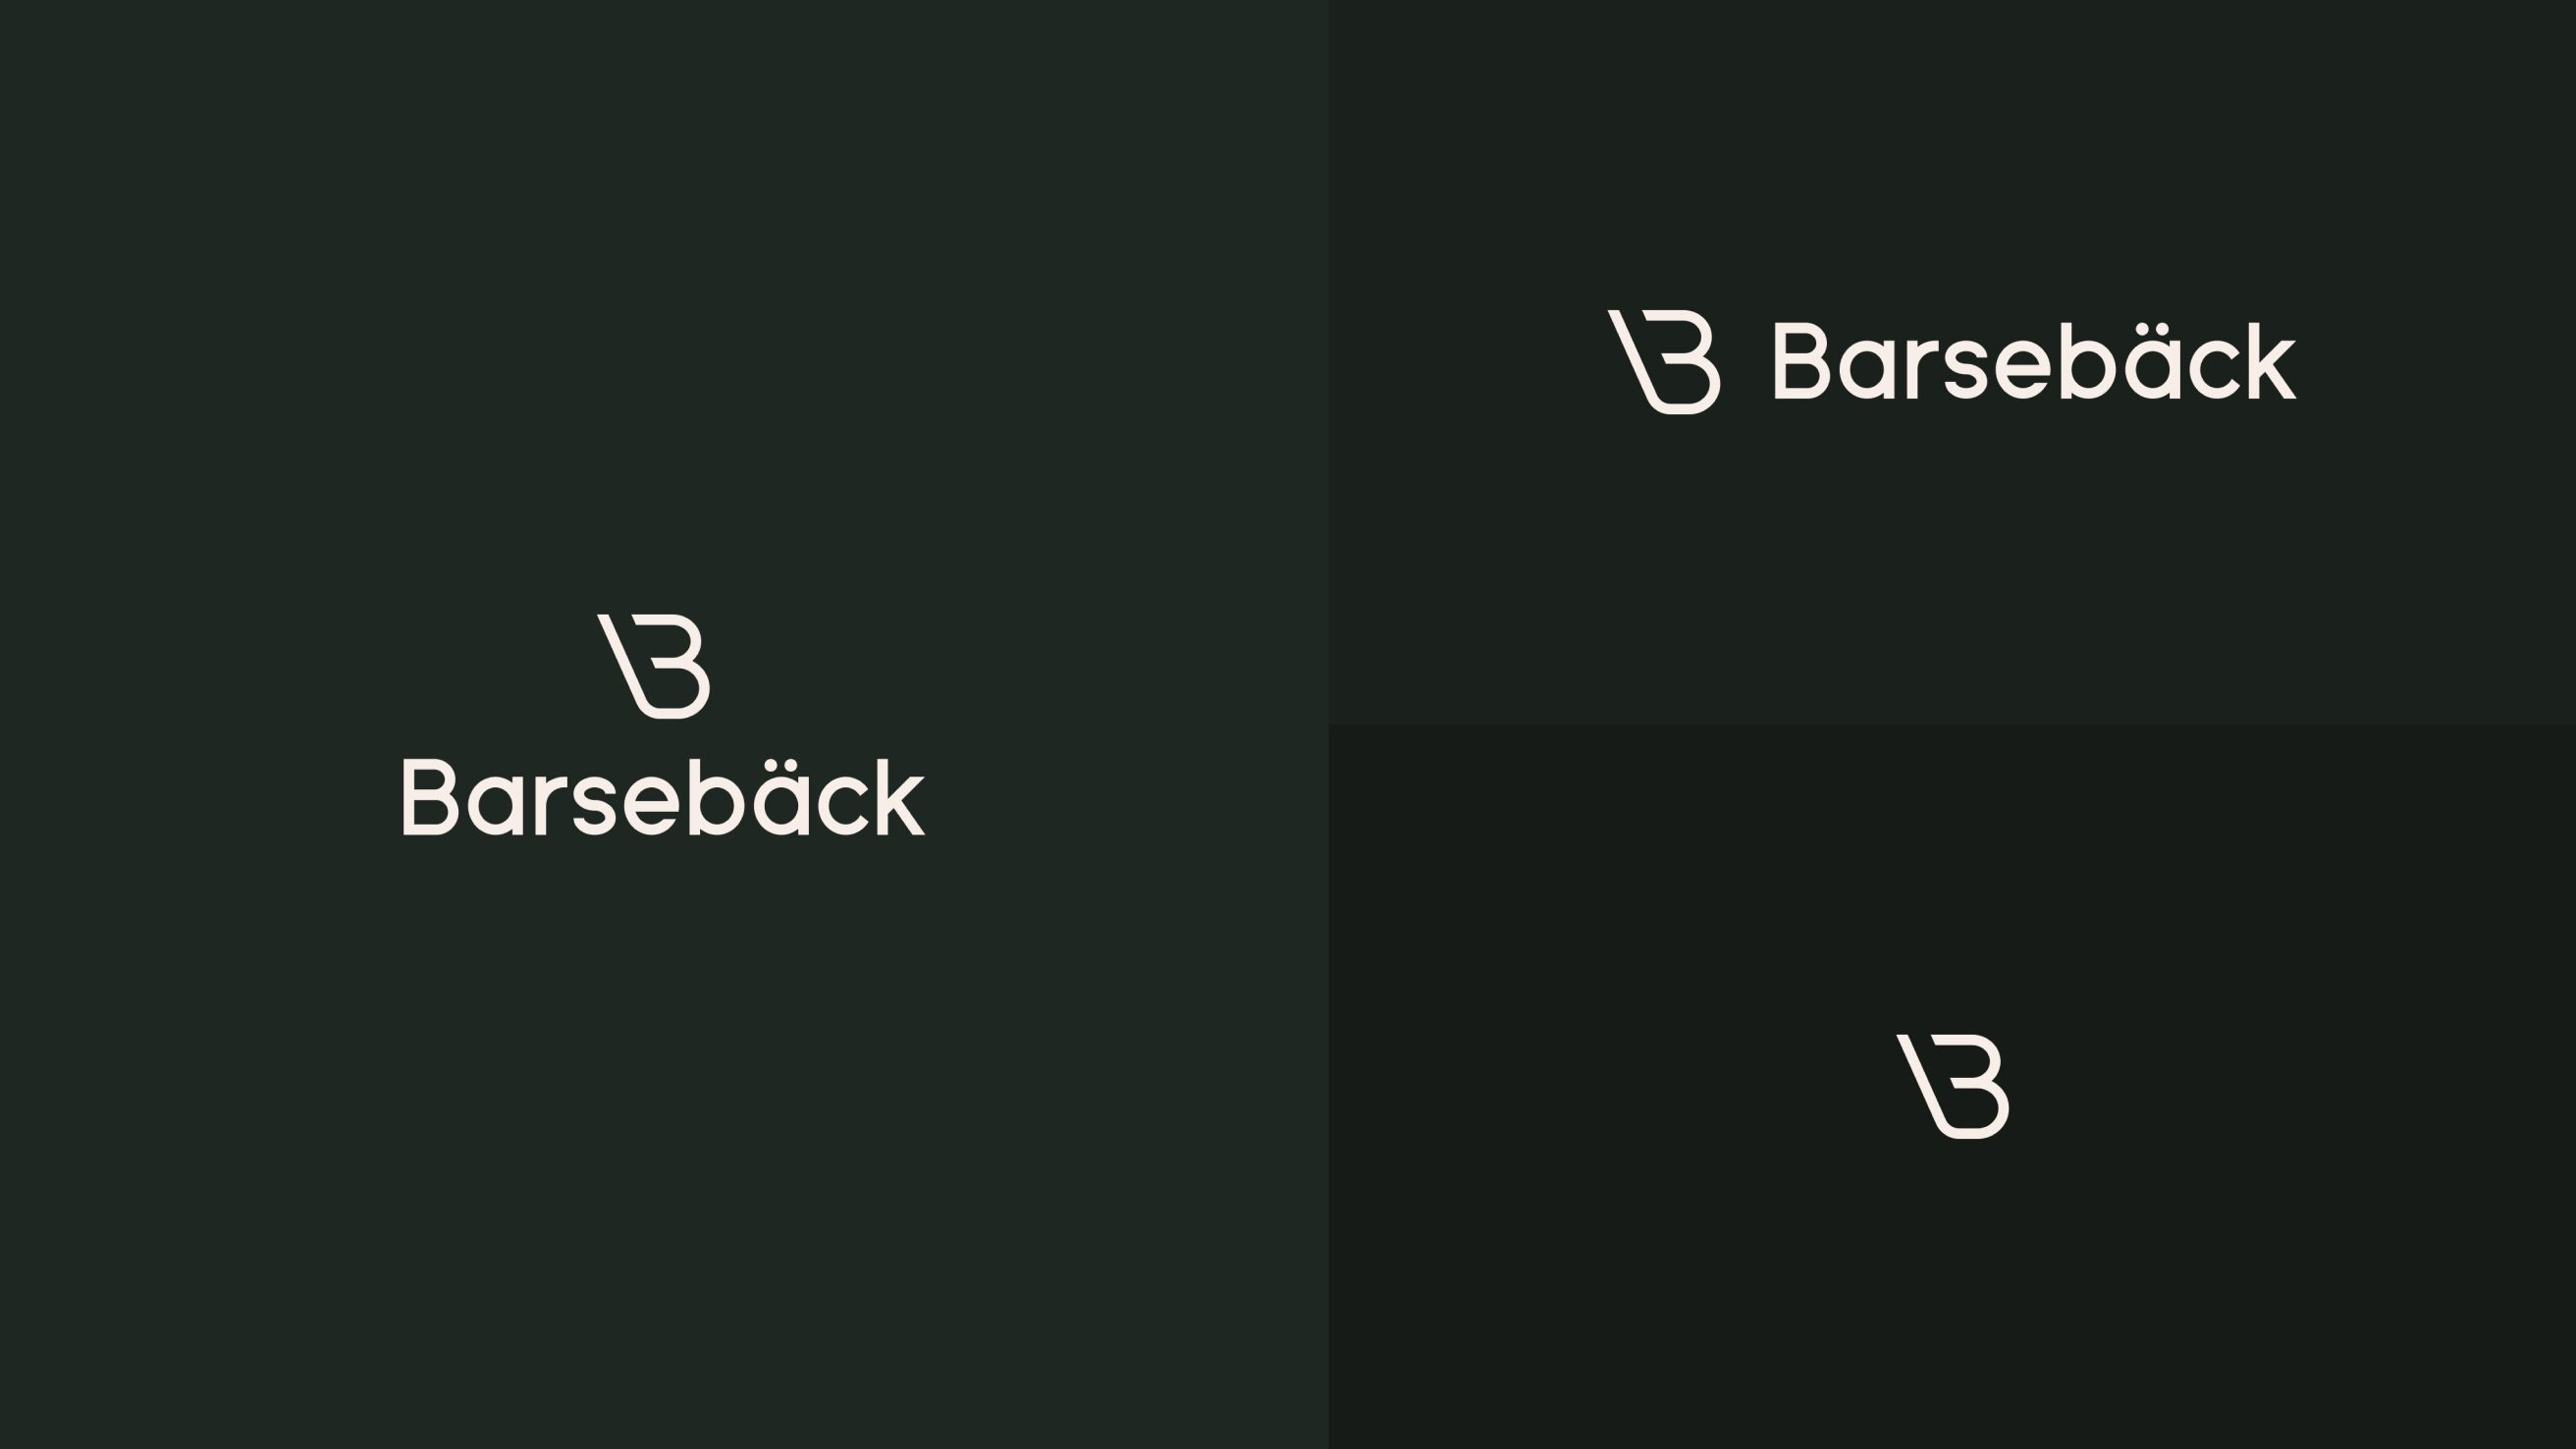 Three presentations of Barsebäcks logotype.